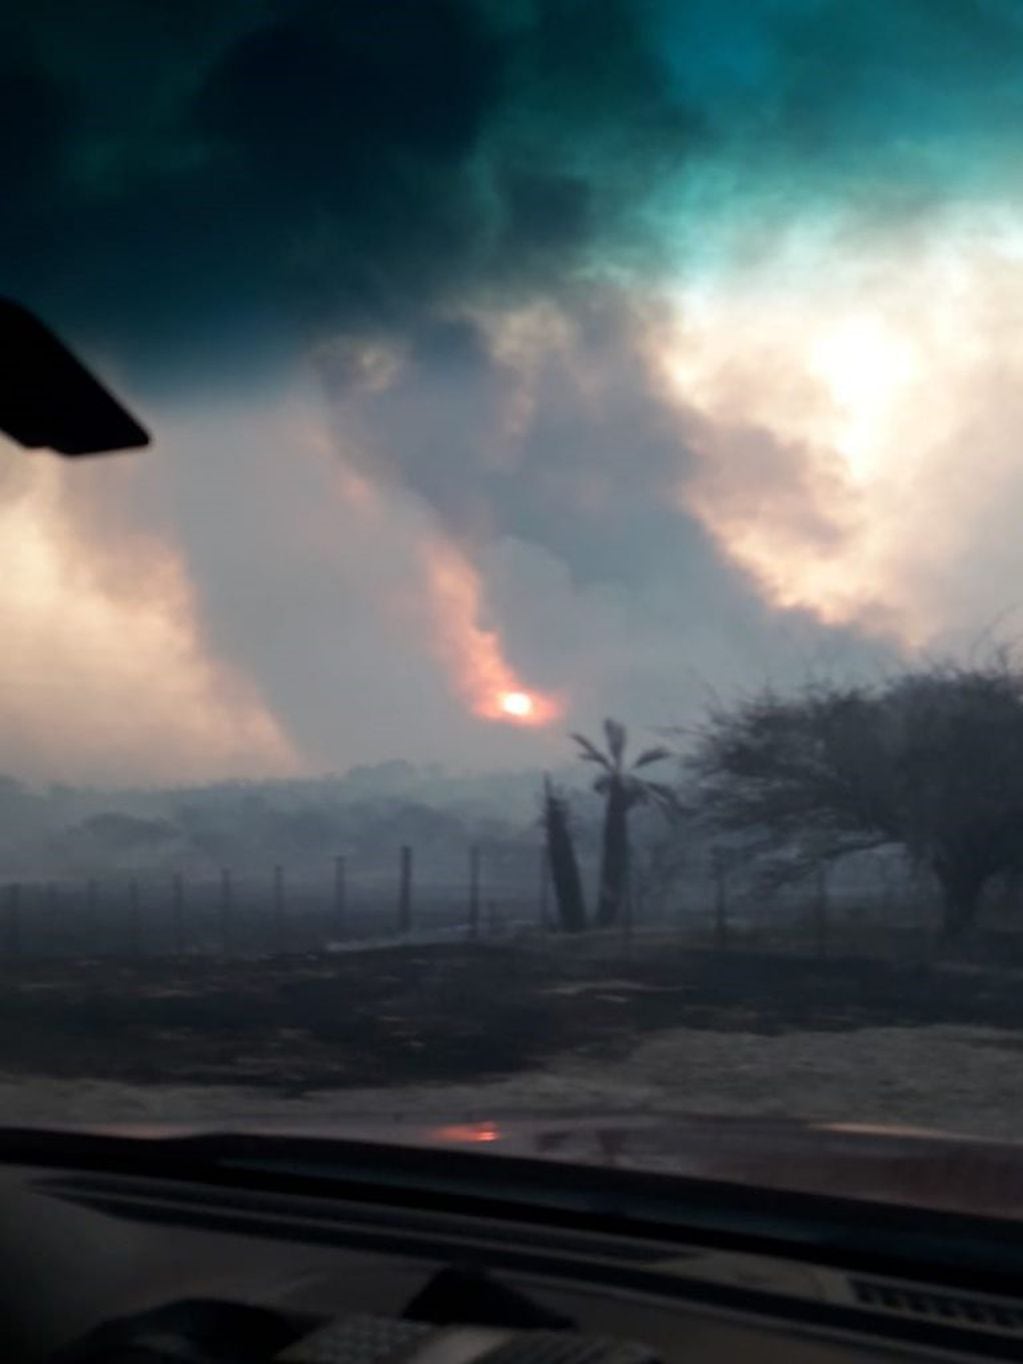 Villa Larca la actividad del incendio levantaba gruesas columnas de humo visualizadas a muchos kilómetros de distancia